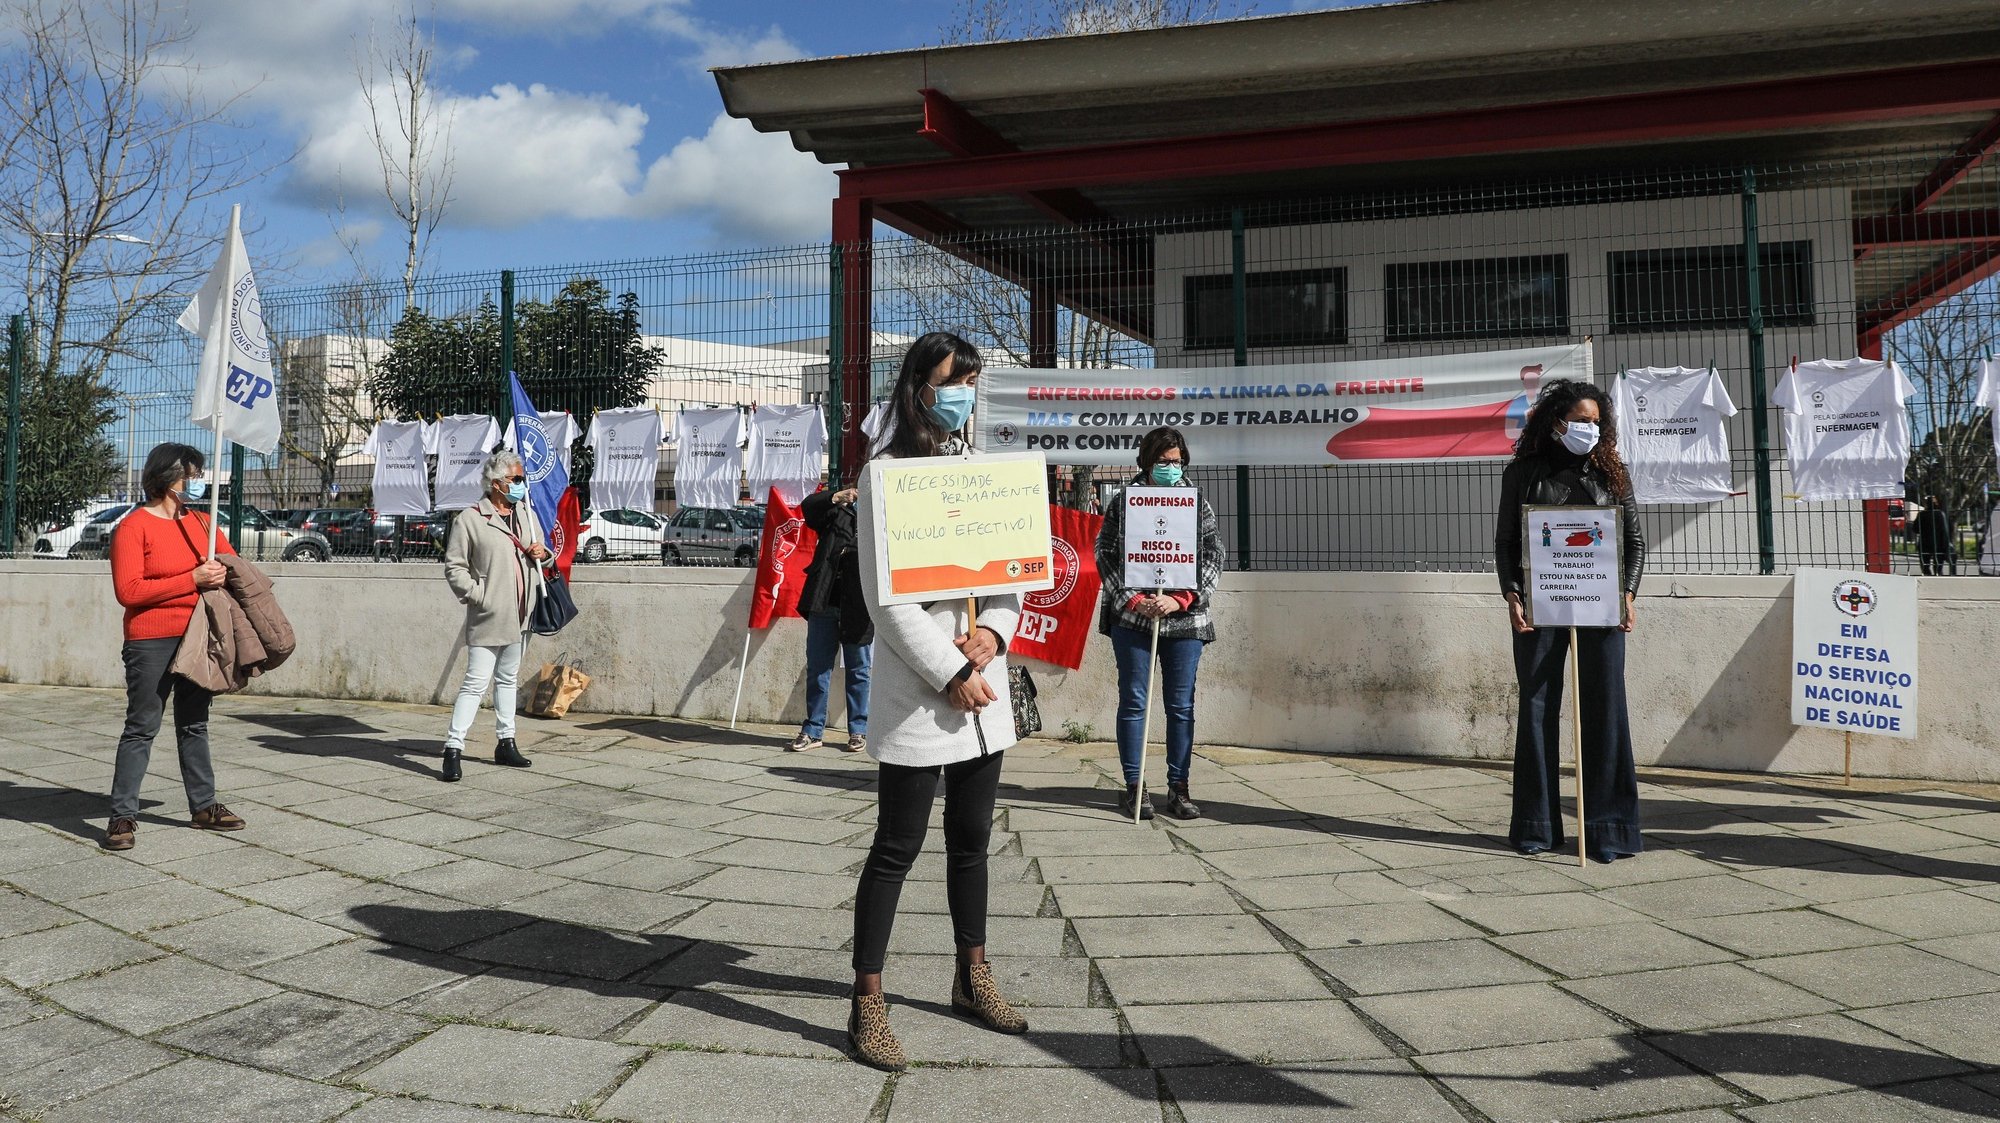 Protesto de enfermeiros do Centro Hospitalar Barreiro Montijo, junto ao mesmo e que exigem melhores condições de trabalho e denunciam injustiças. Barreiro, 22 de fevereiro de 2021. MIGUEL A. LOPES/LUSA